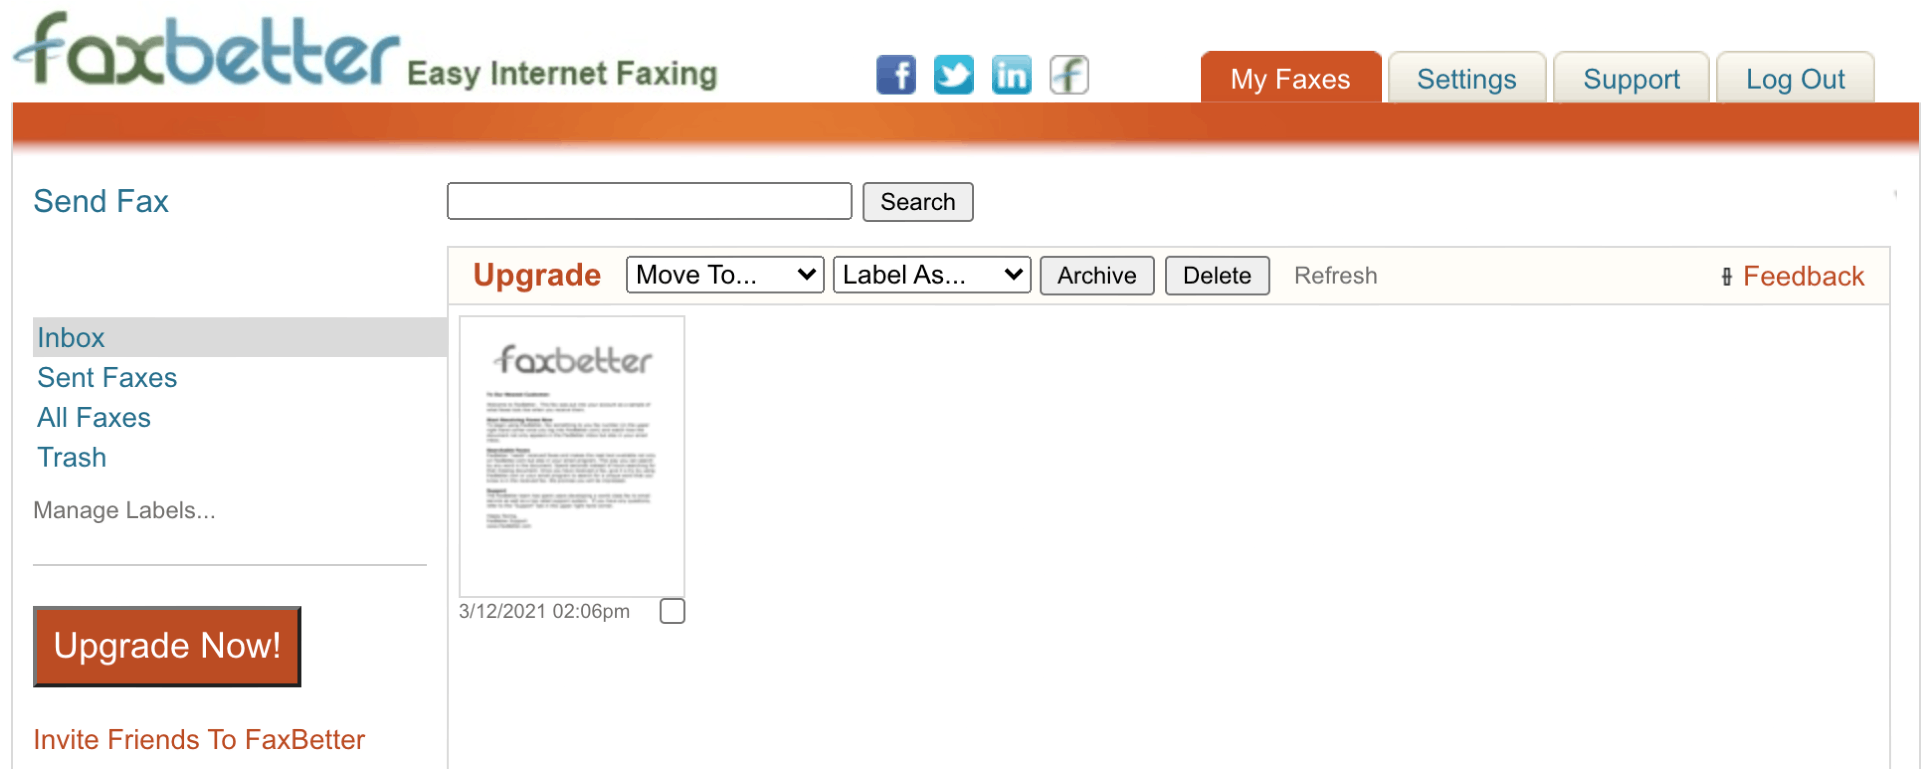 faxbetter interface